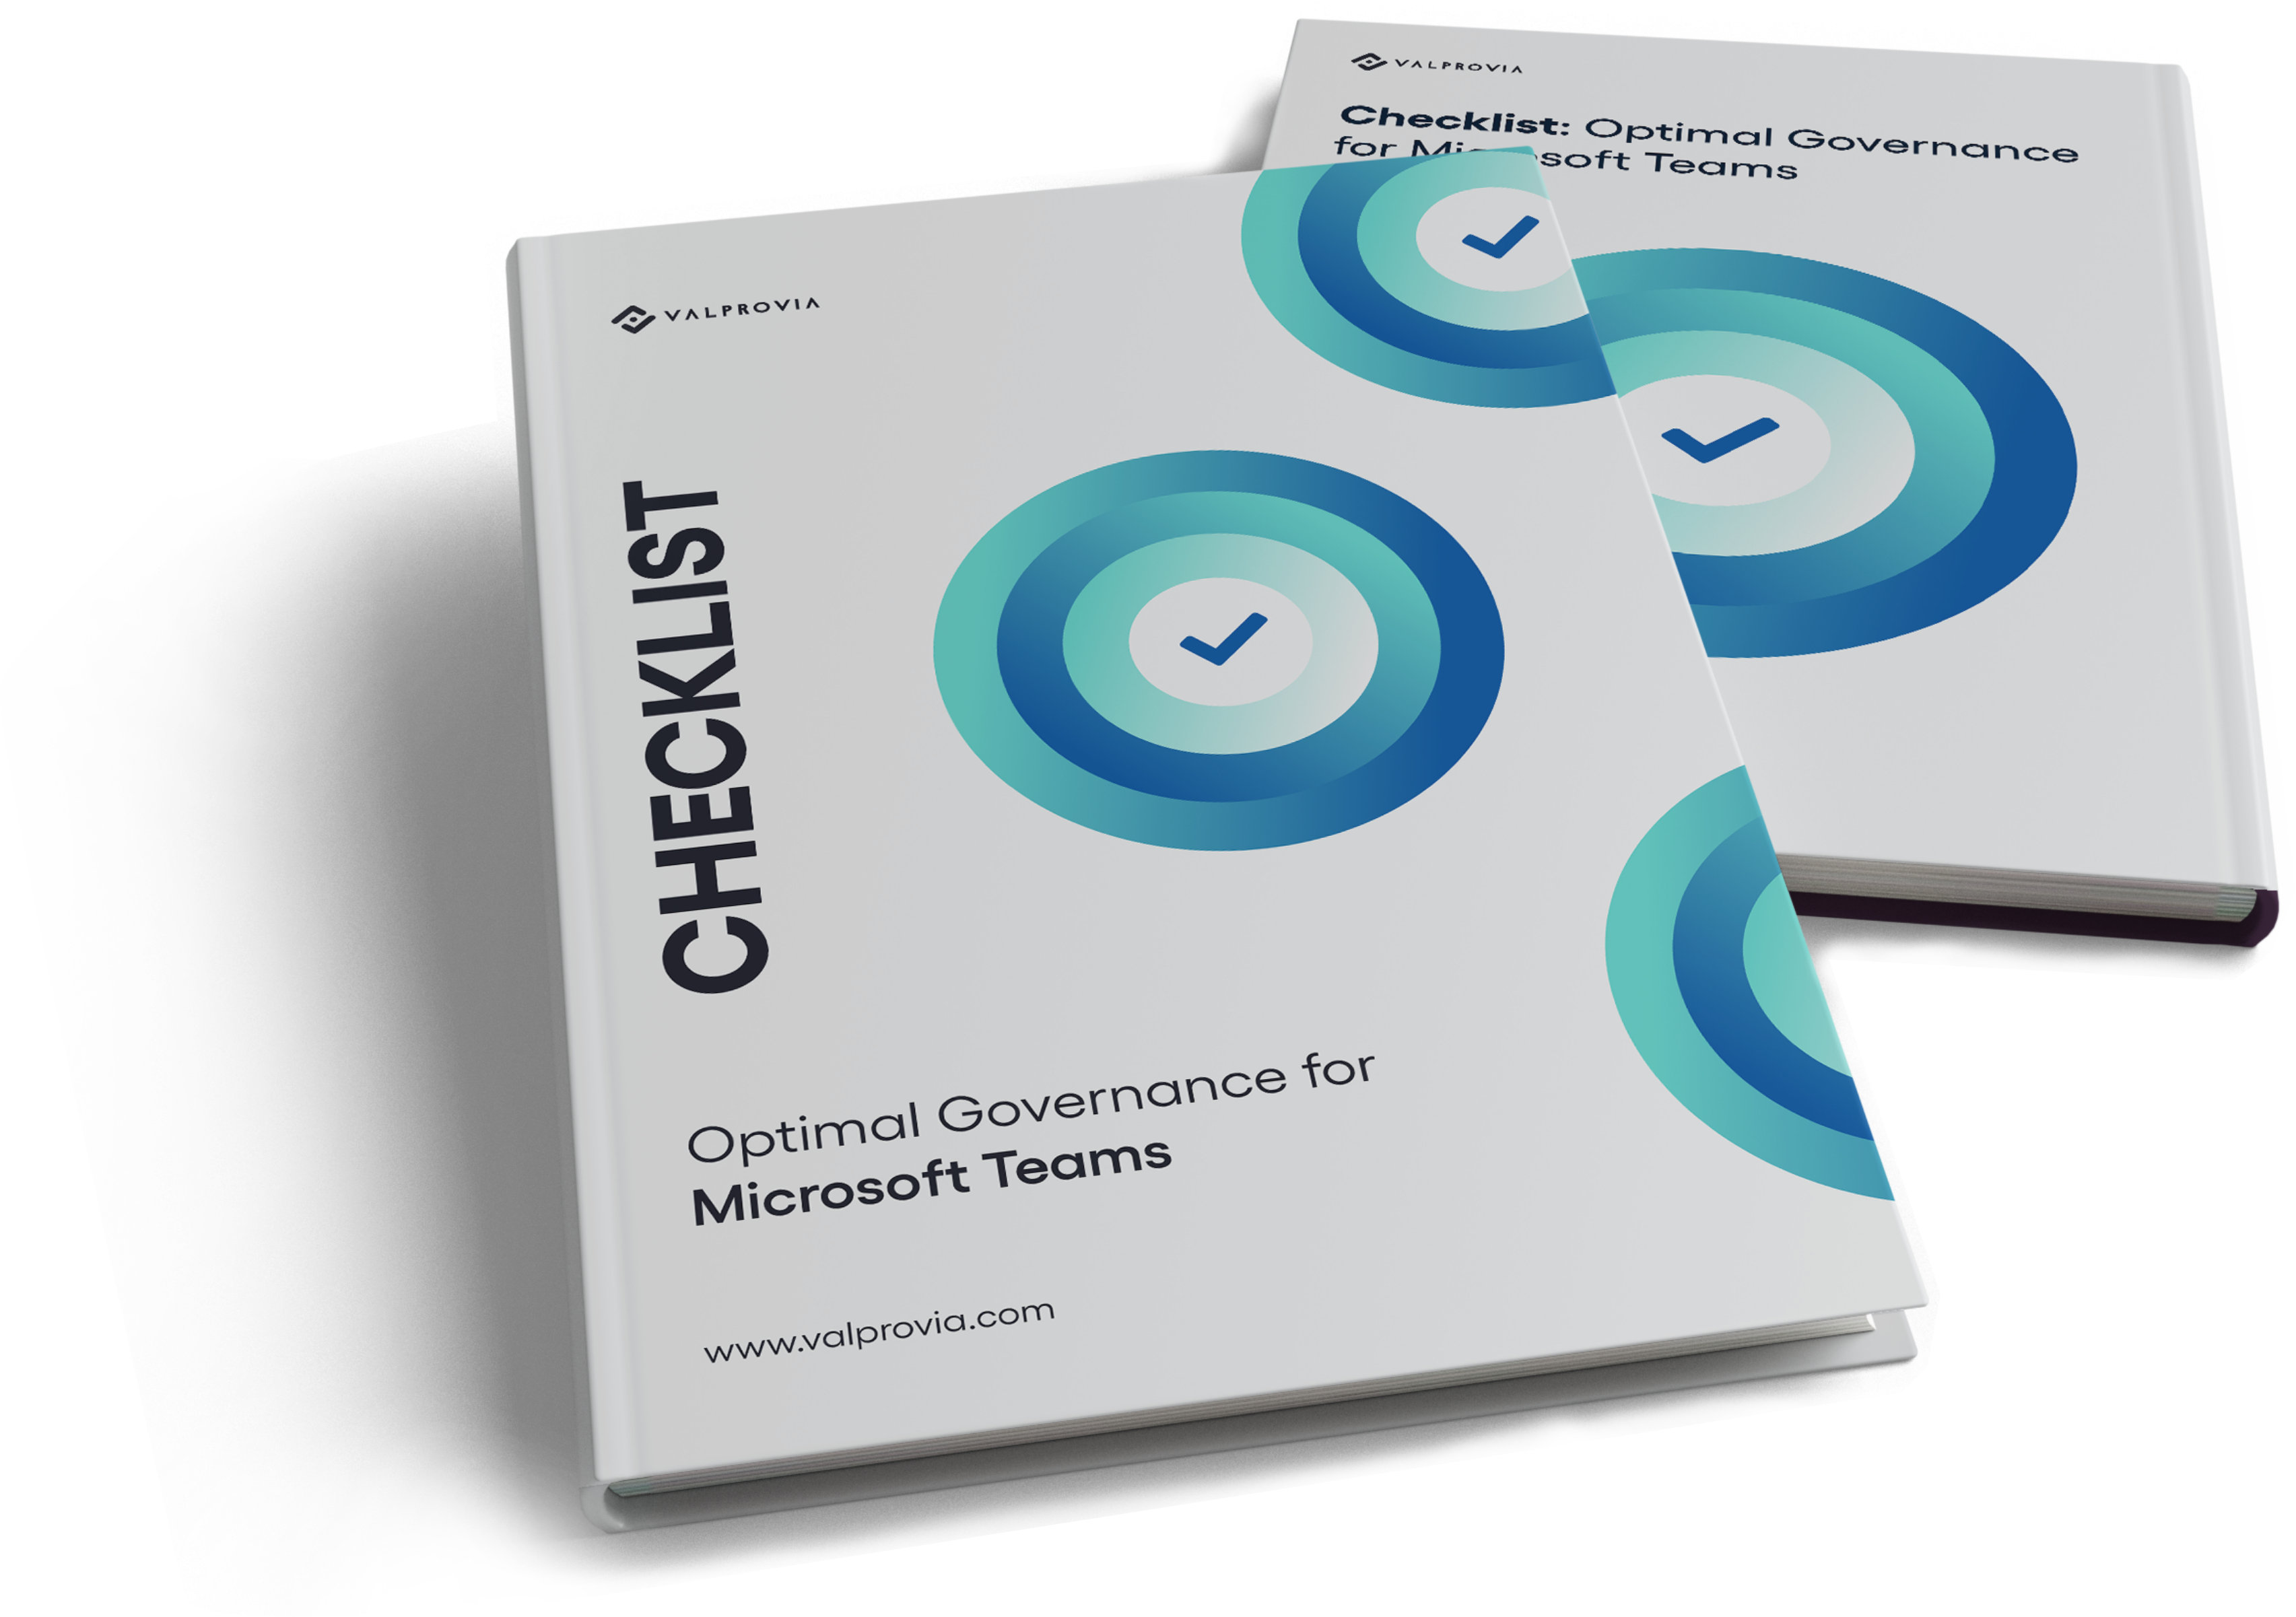 Microsoft Governance Checklist for MS Teams